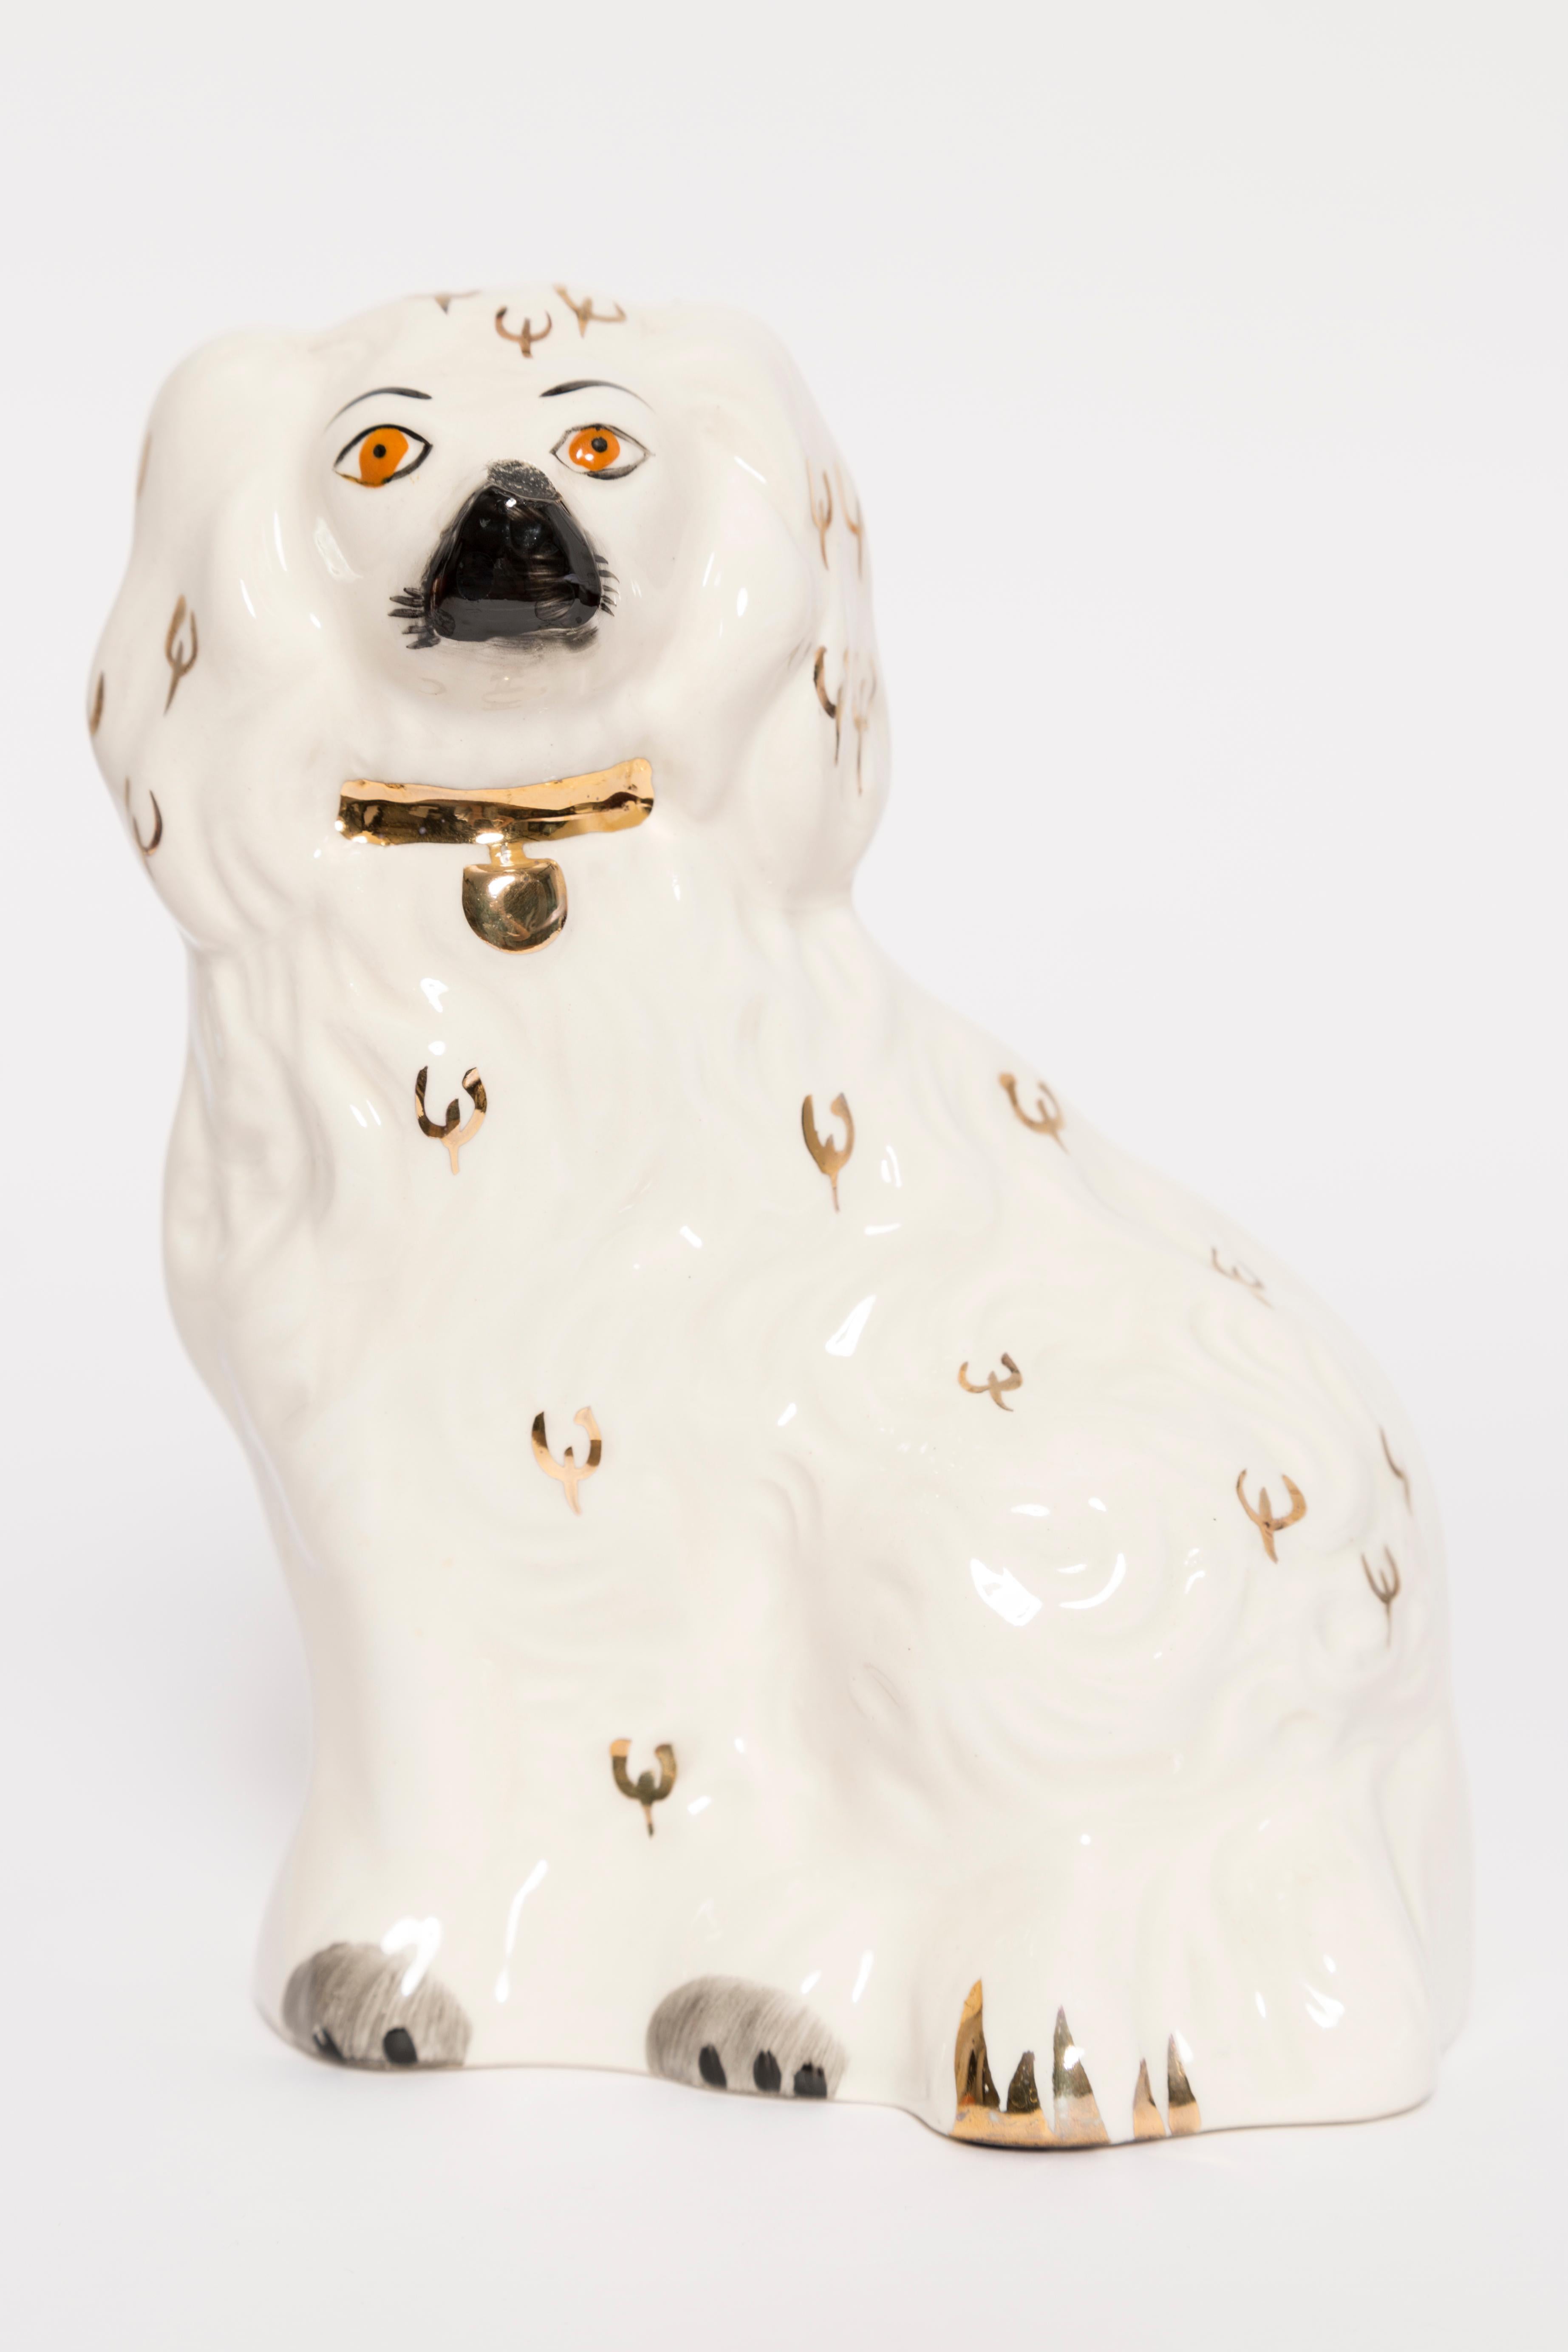 Céramique peinte, bon état d'origine vintage. Une sculpture décorative magnifique et unique. La sculpture de chien du Yorkshire a été produite dans le Staffordshire, en Angleterre, dans les années 1960.